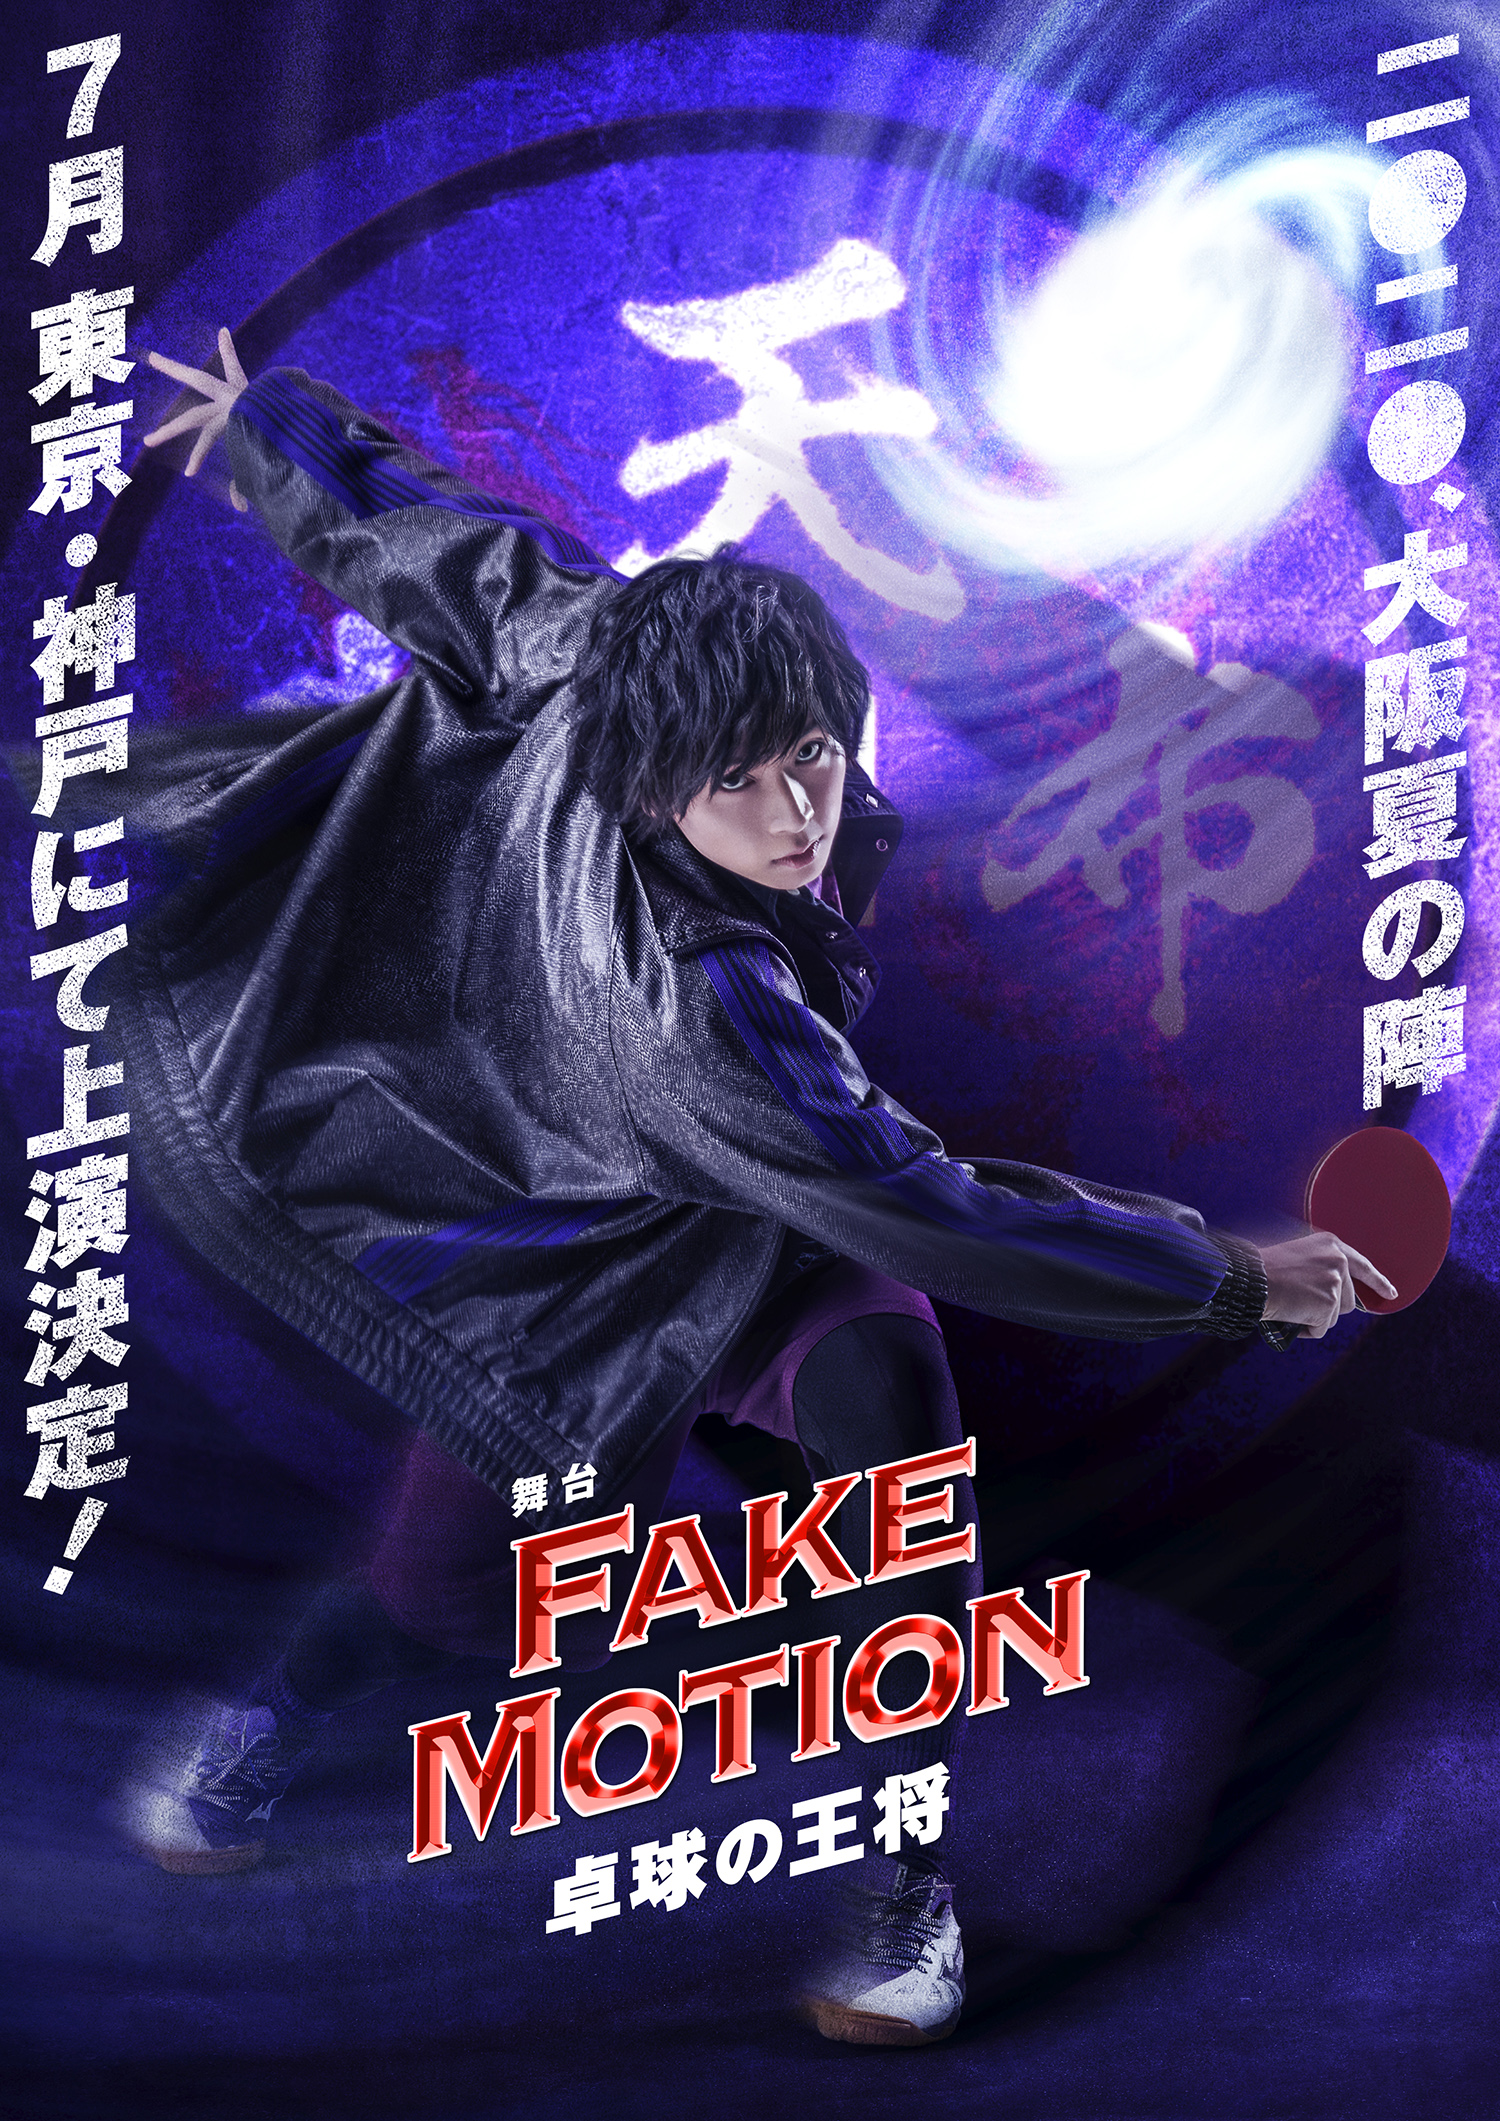 「FAKE MOTION -卓球の王将-」